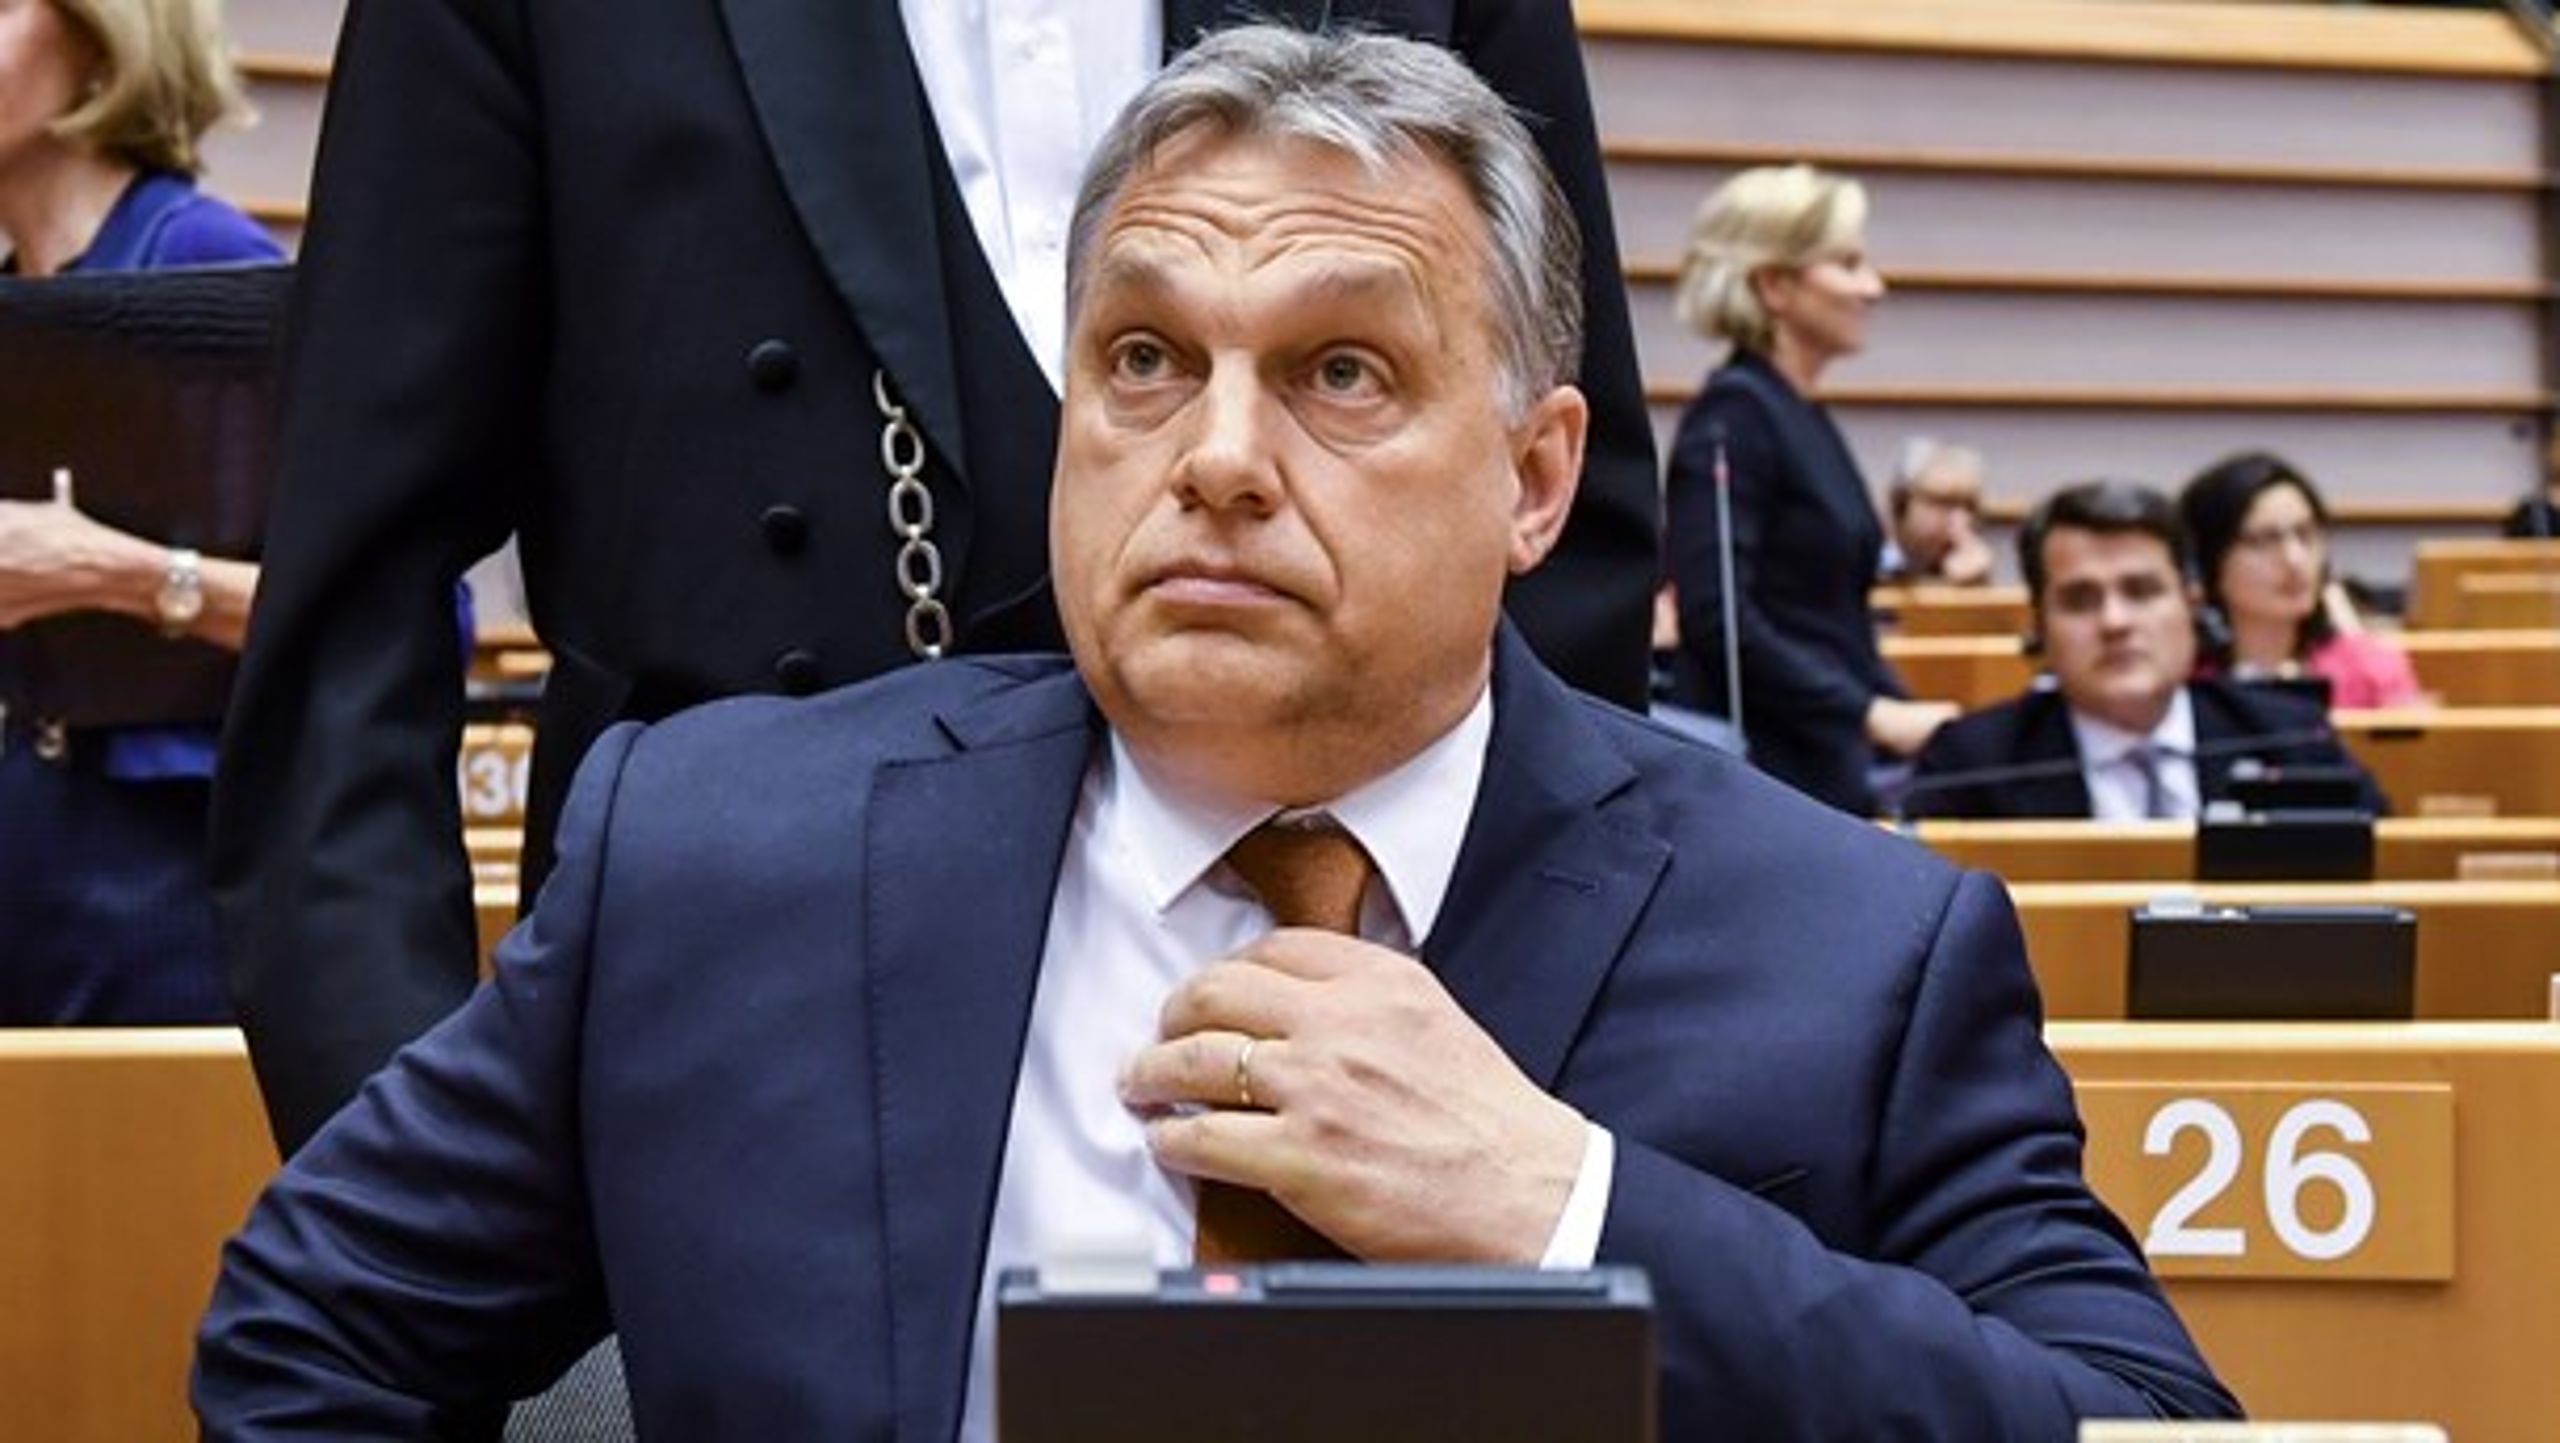 De europæiske politikeres skåltaler mod Orbáns politik er ikke nok. Nu skal der handles, skriver Nikolaj Villumsen.